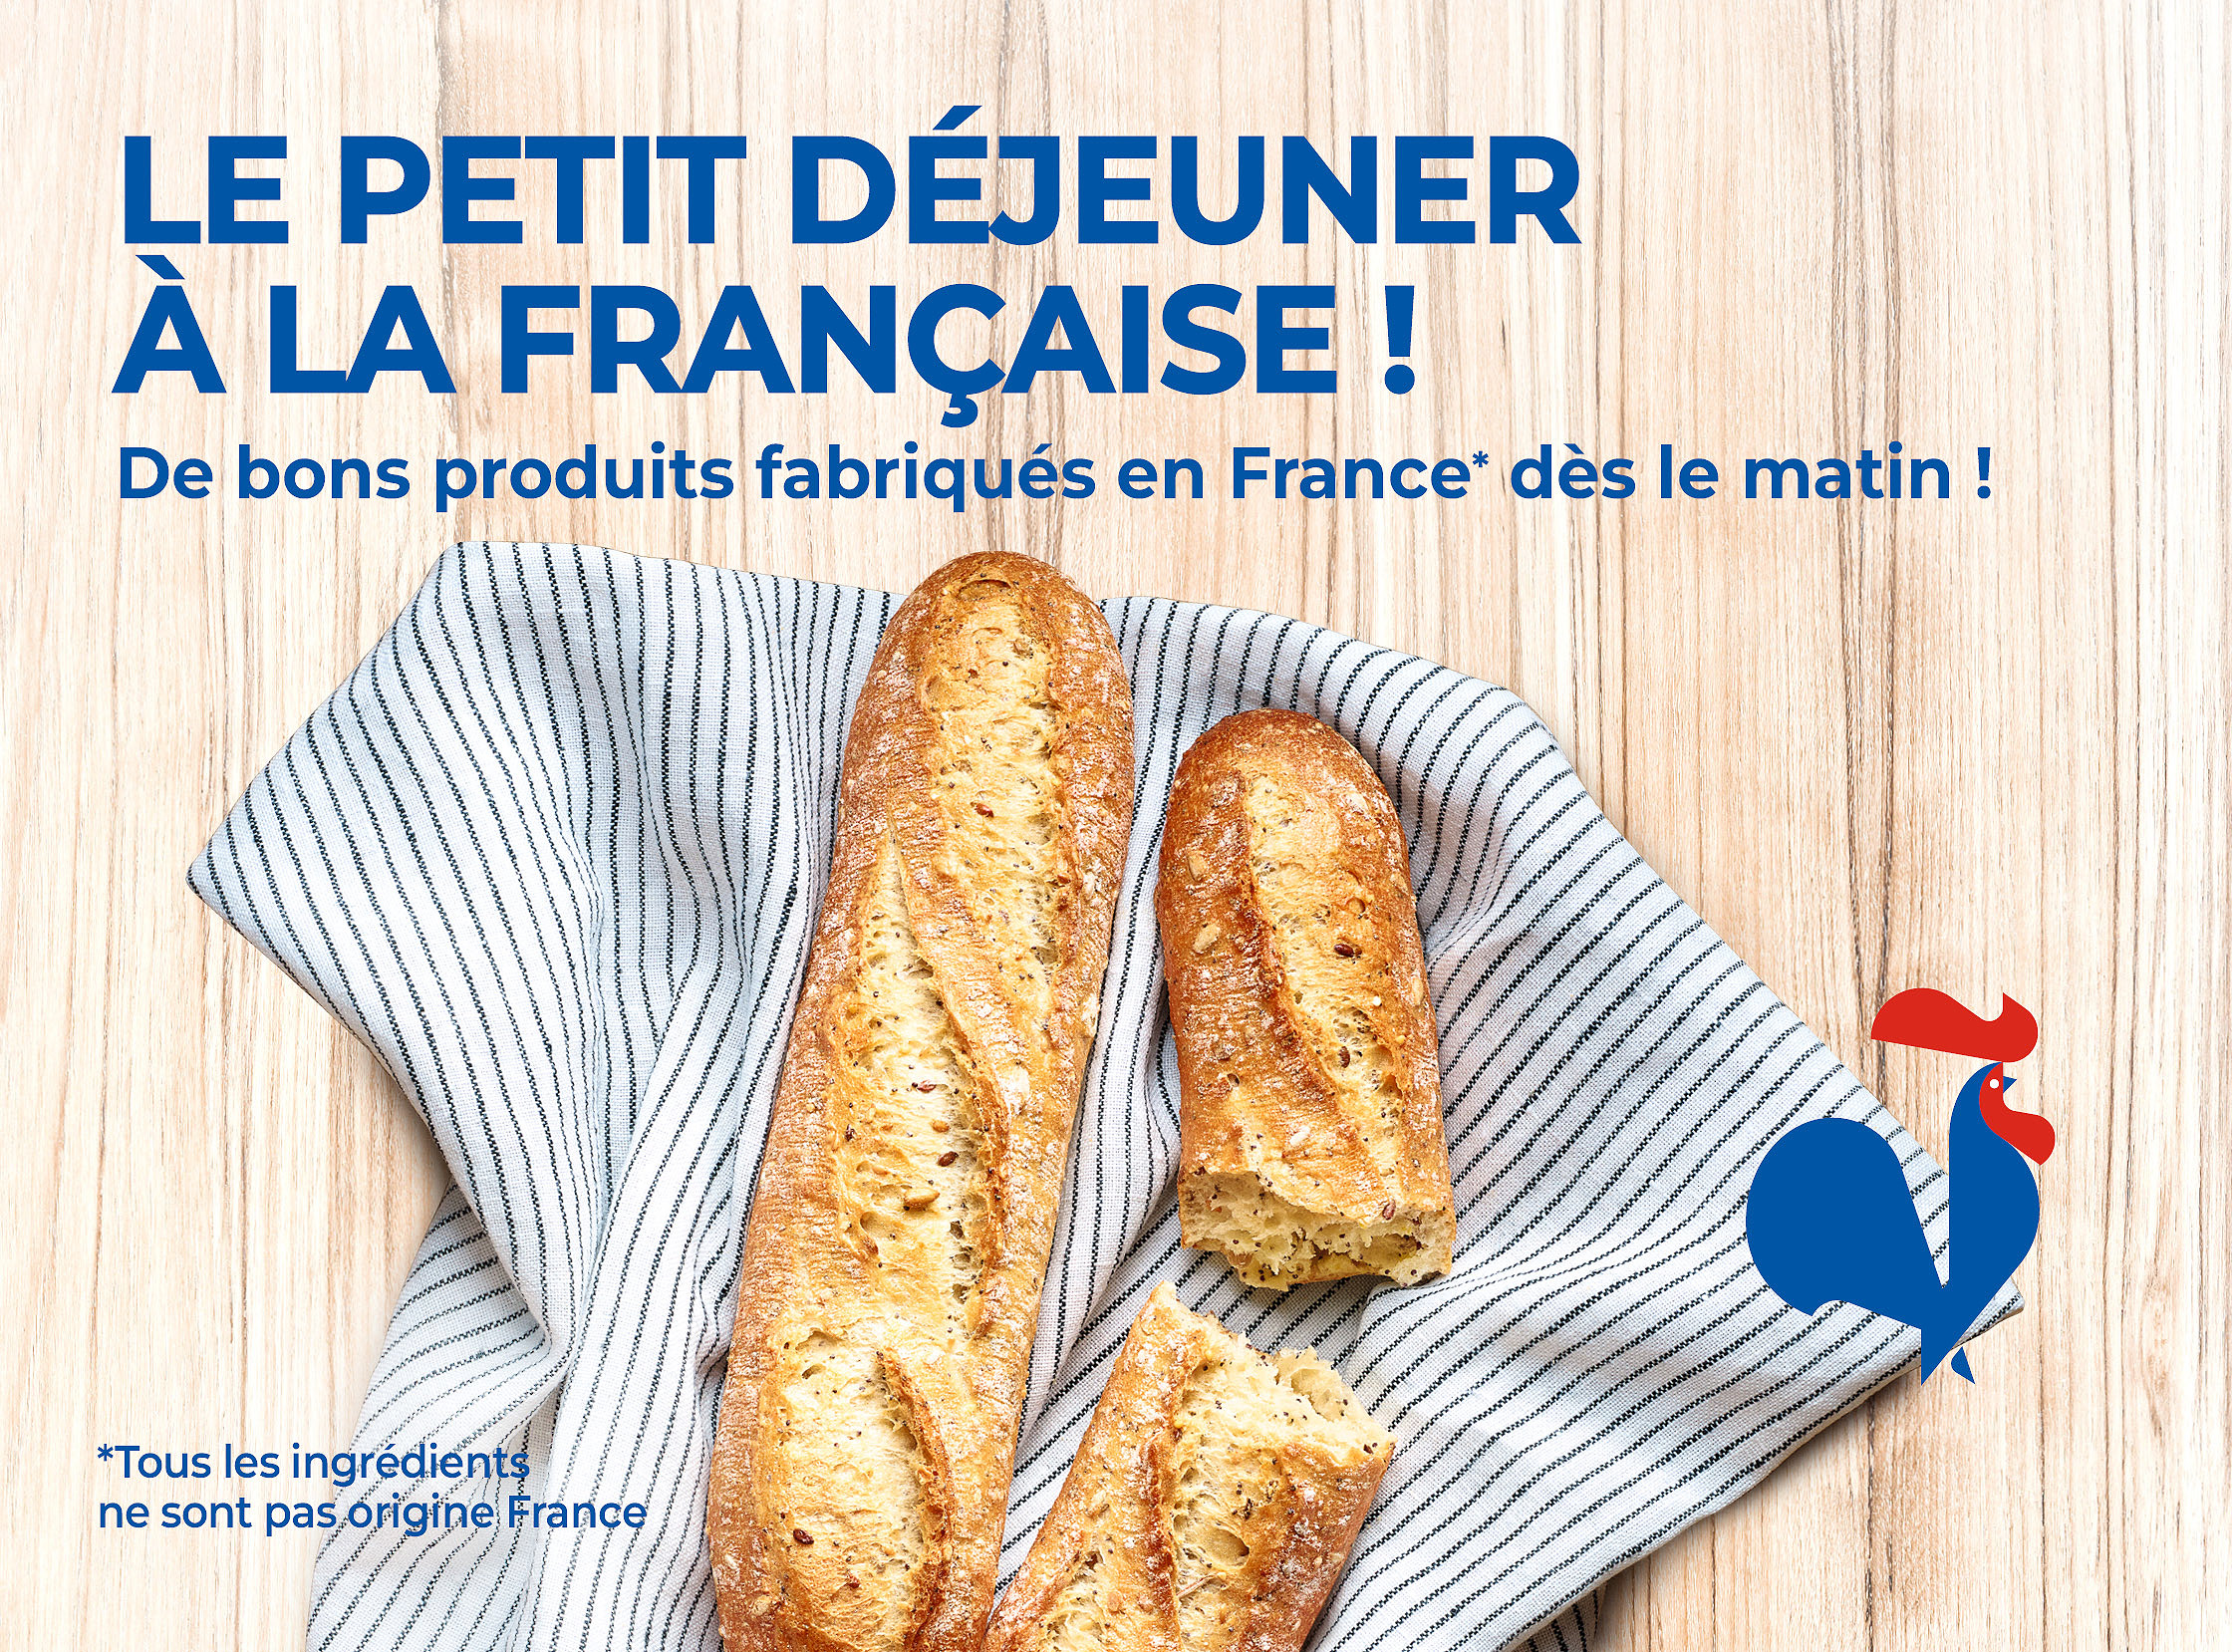 Brioches, petits pains, pancakes, croissants, pains au chocolat, crêpes : profitez d'un bon petit déjeuner à la française avec notre sélection de produits fabriqués en France